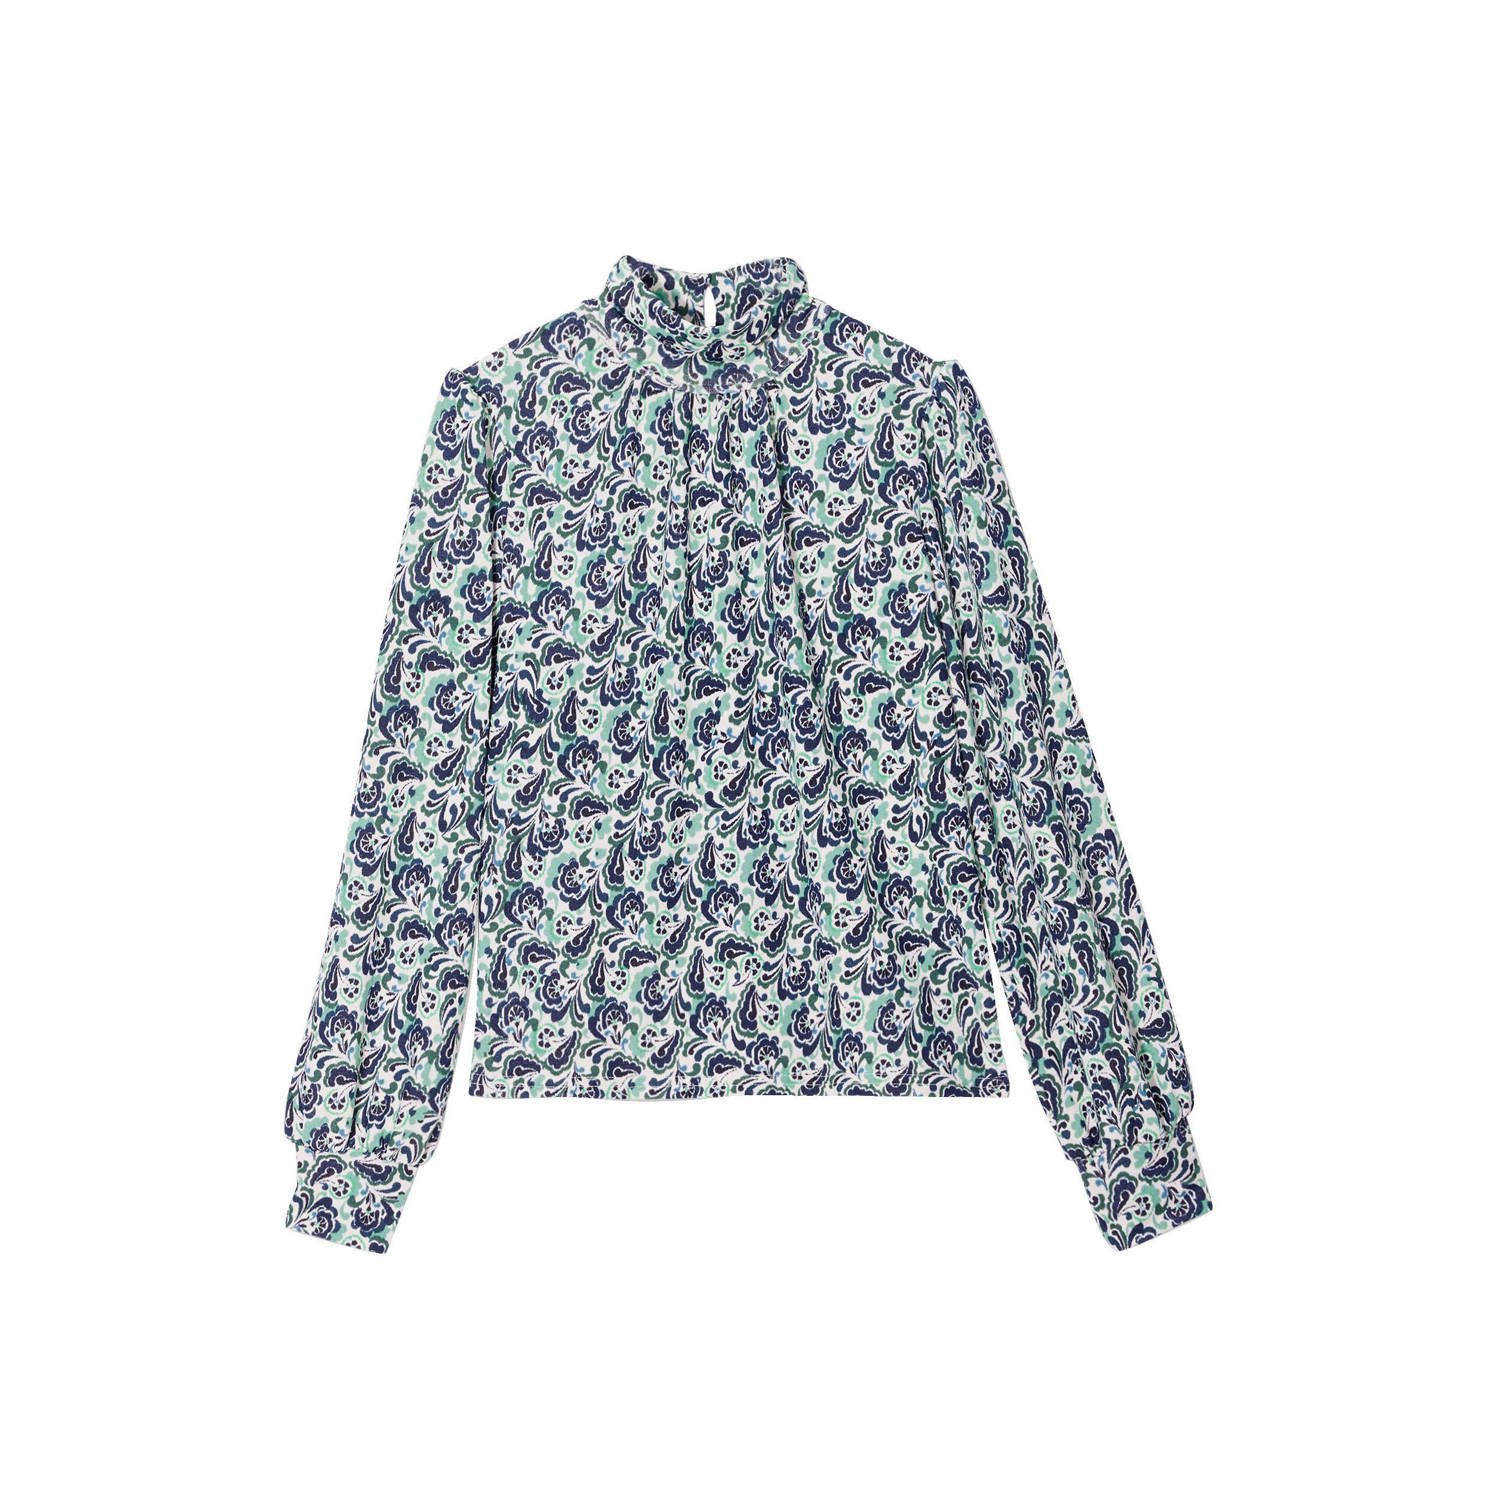 Cache blousetop met all over print en open detail donkerblauw groen ecru